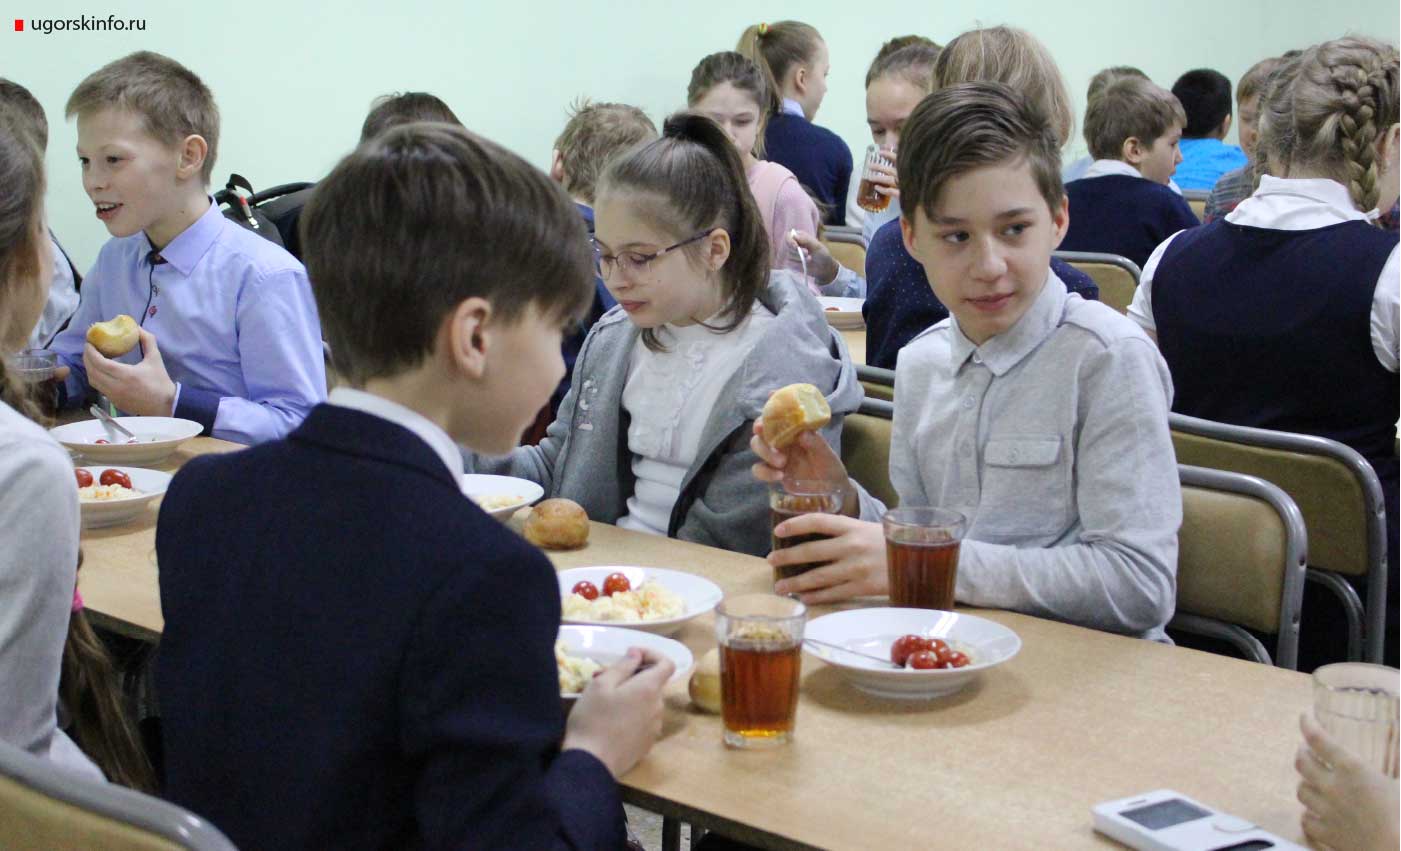 В Югорске городская комиссия следит за организацией питания обучающихся в образовательных учреждениях. В этом учебном году первой в графике проверок стоит школа № 6, начали с нее не случайно, а по сигналу.